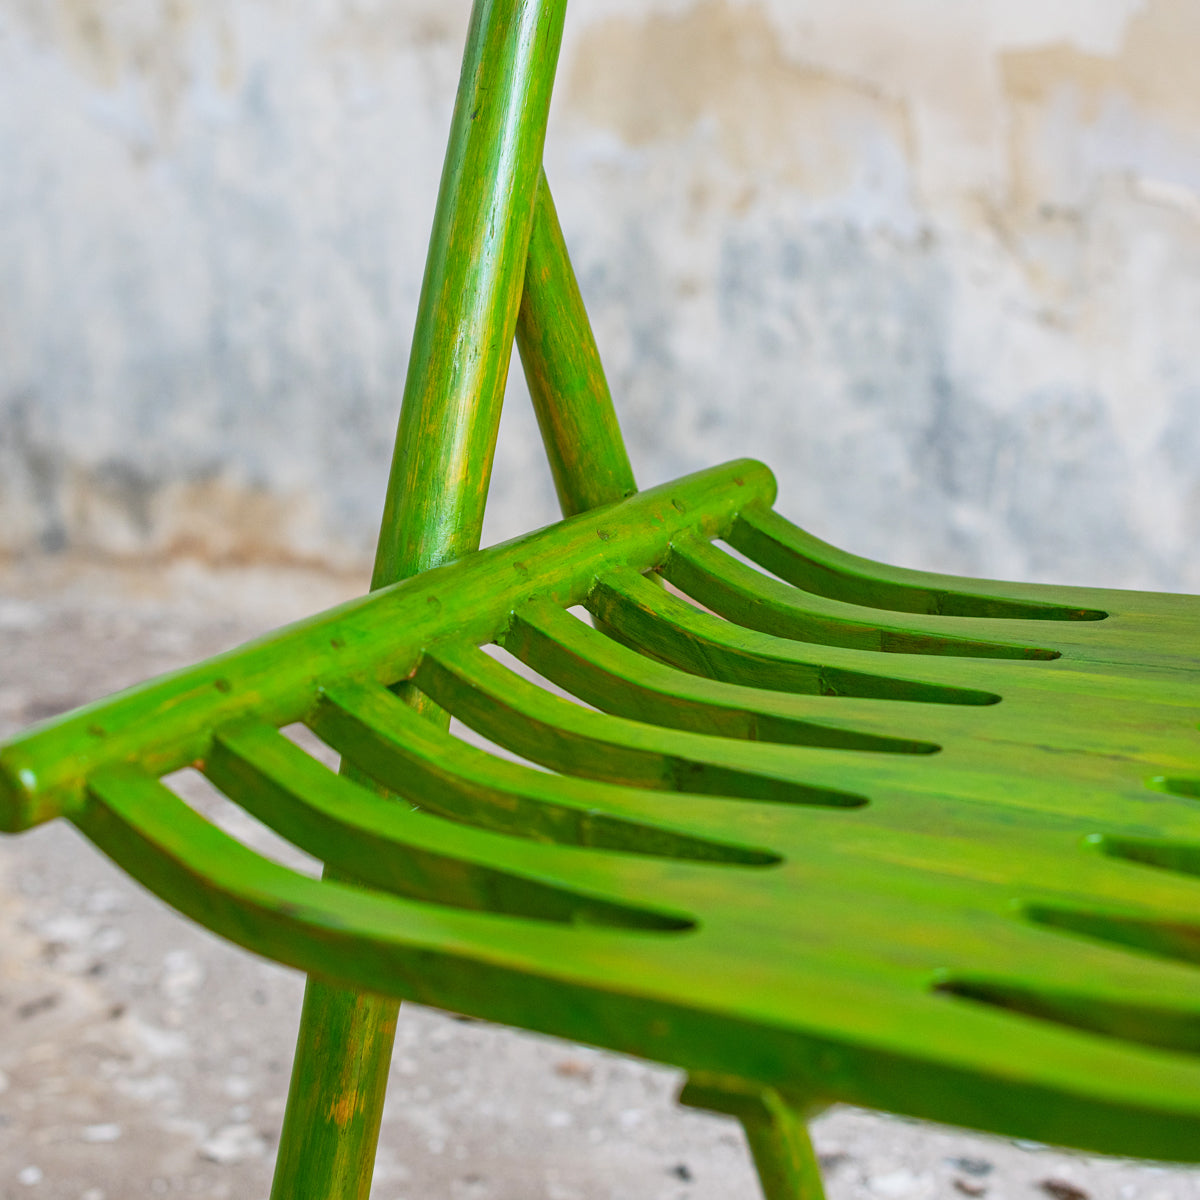 Sawboo Chair - Natural